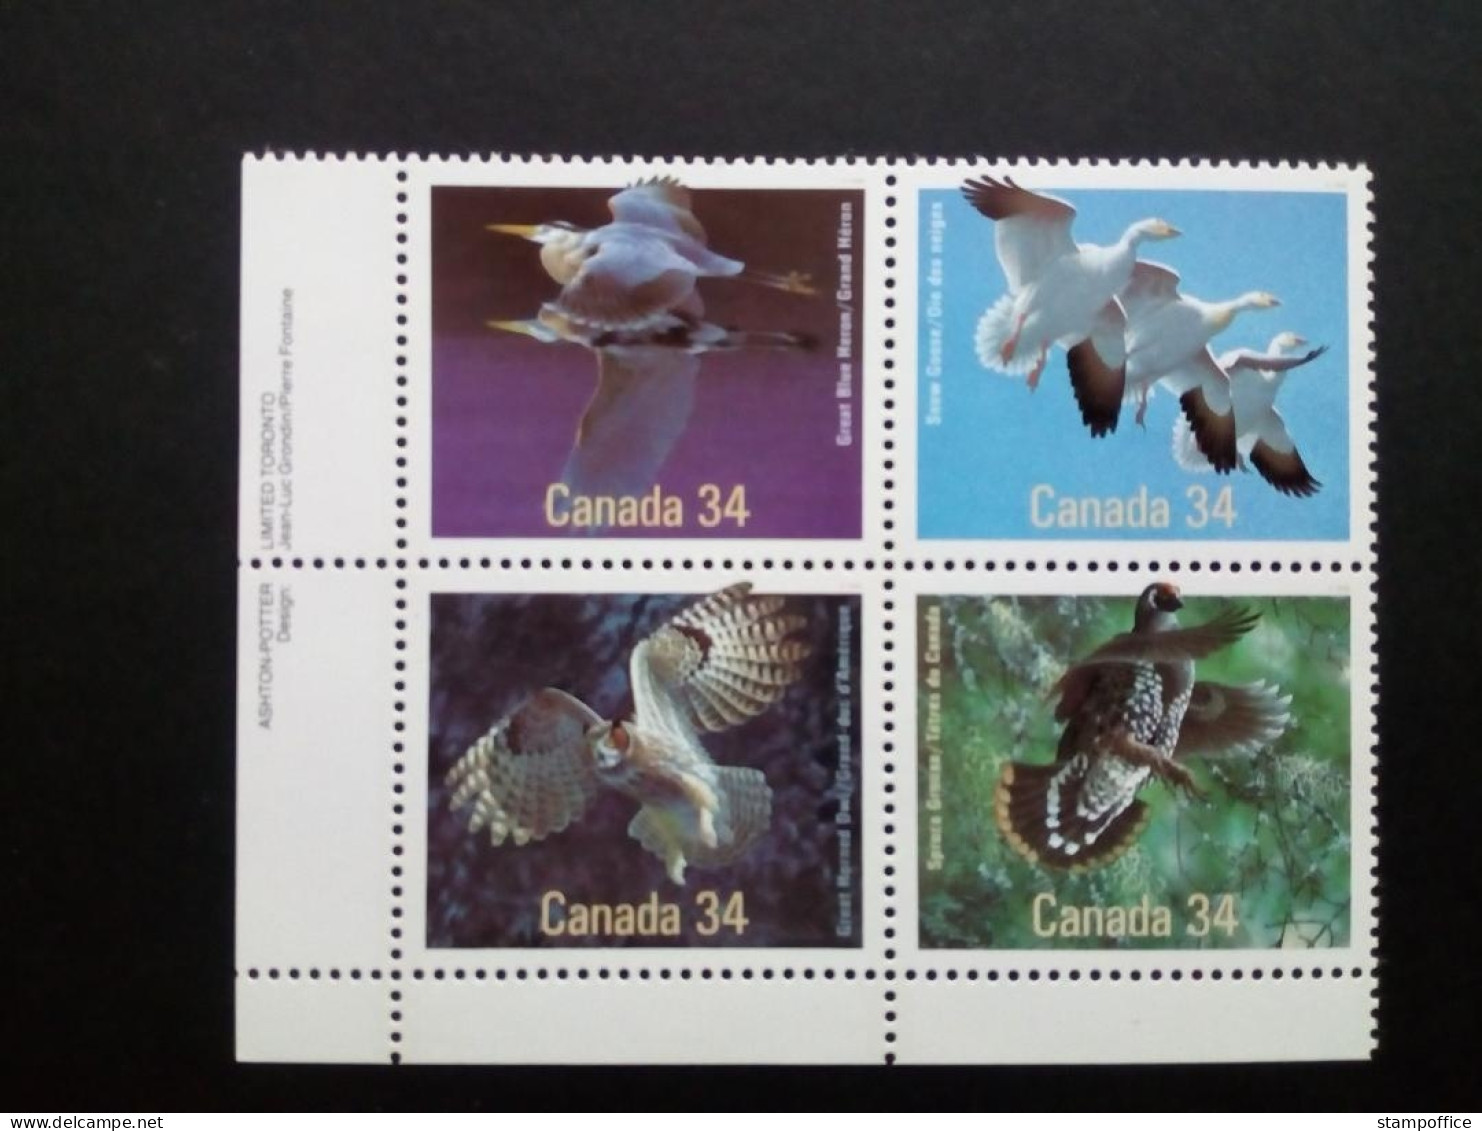 CANADA MI-NR. 995-998 POSTFRISCH VÖGEL 1986 SCHNEEGANS GRAUREIHER WLADHUHN UHU - Hiboux & Chouettes